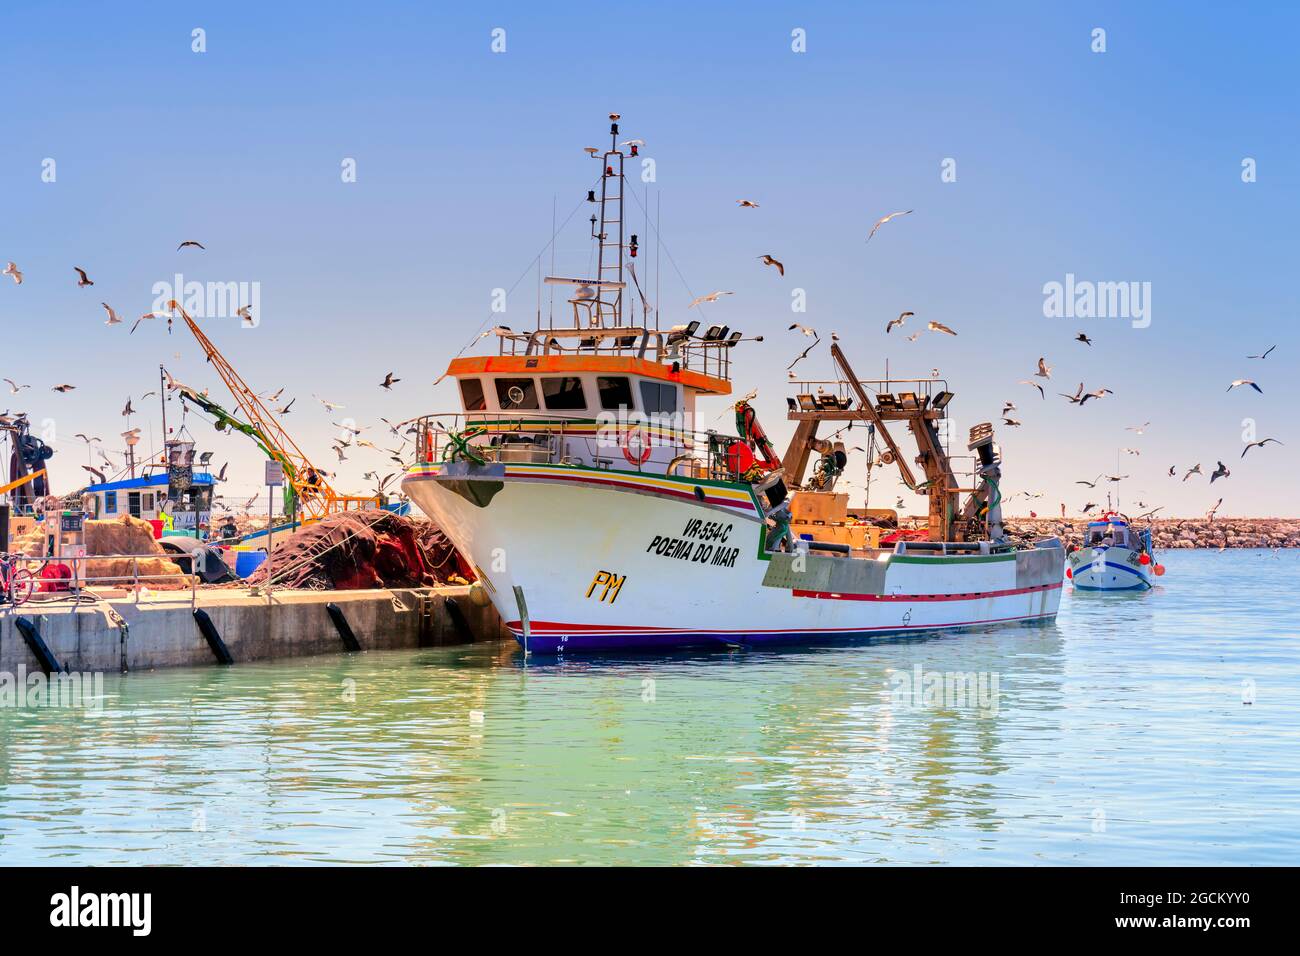 Poema do mar ein großer Fischertrawler dockte im Hafen von Quarteira an, umgeben von Möwen, Quarteira Algarve Portugal Stockfoto